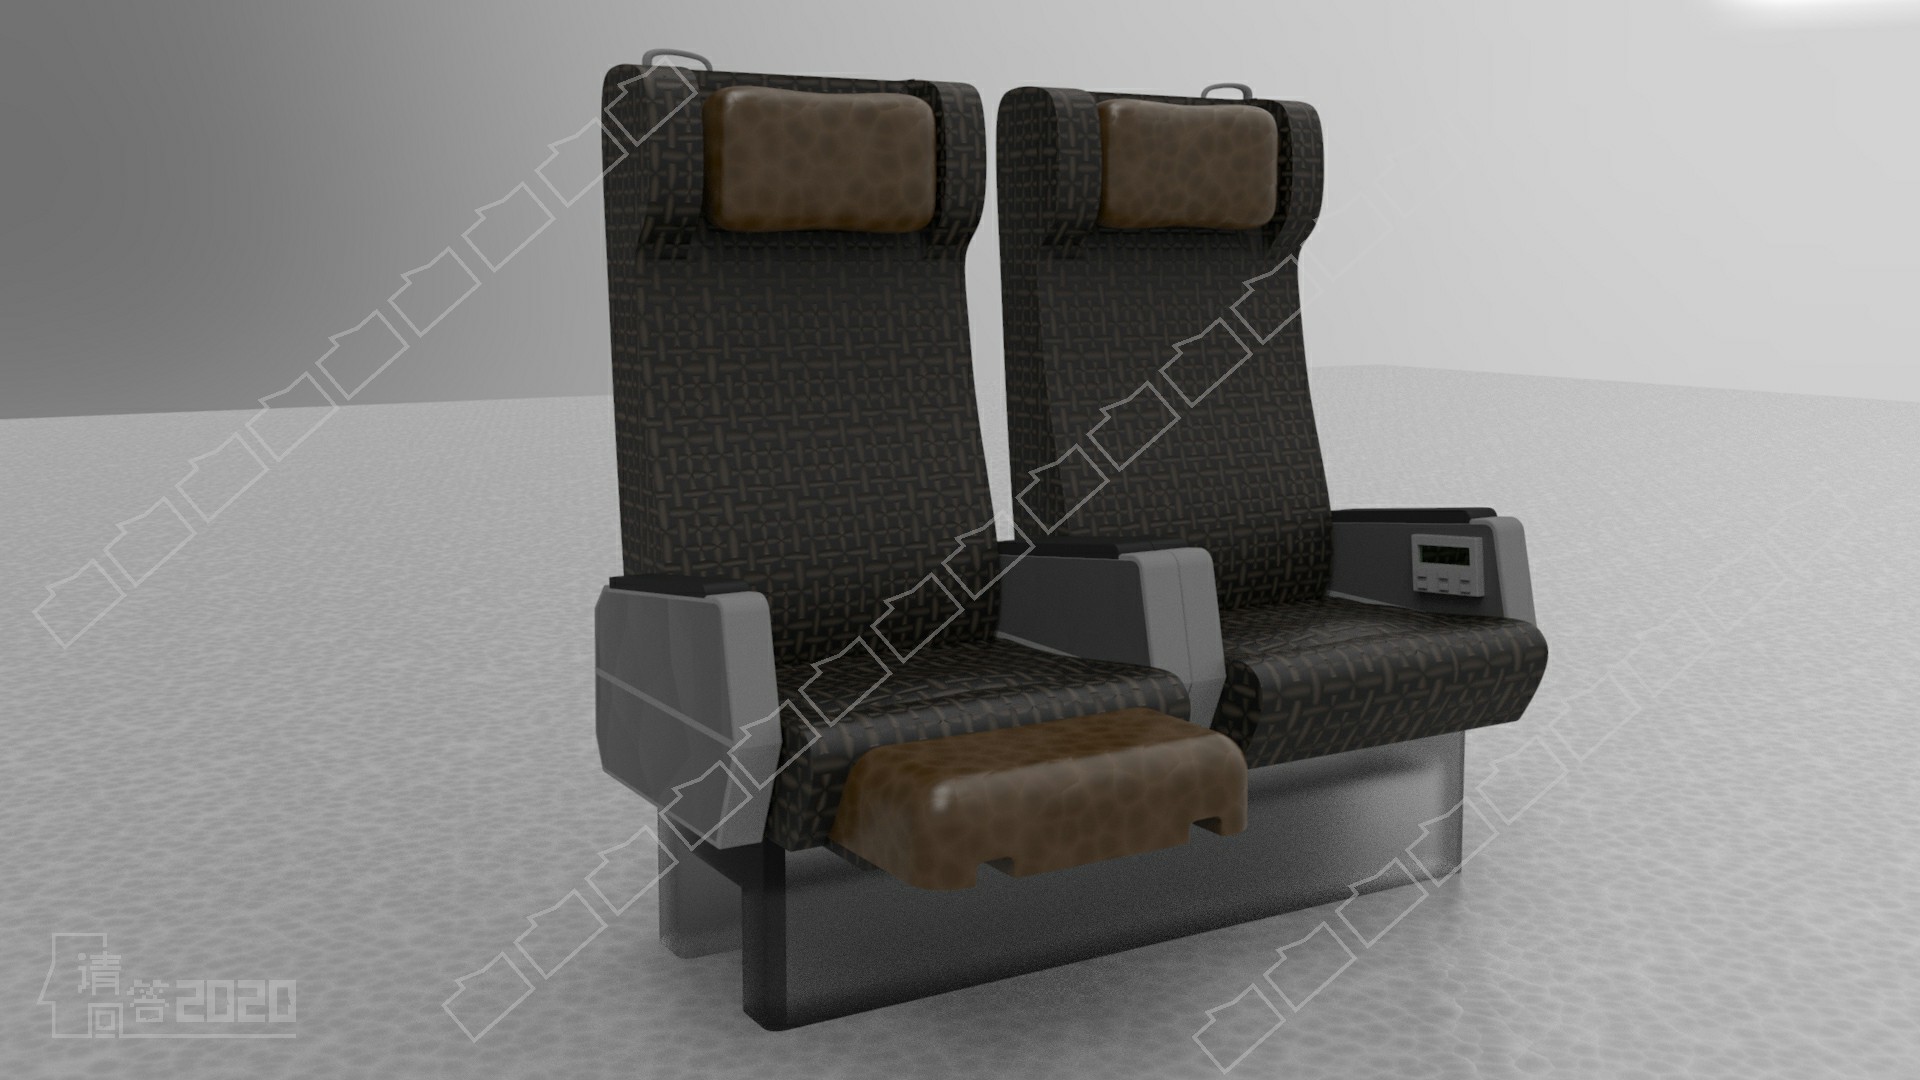 实现交互功能的高铁车厢及座椅设计与研究